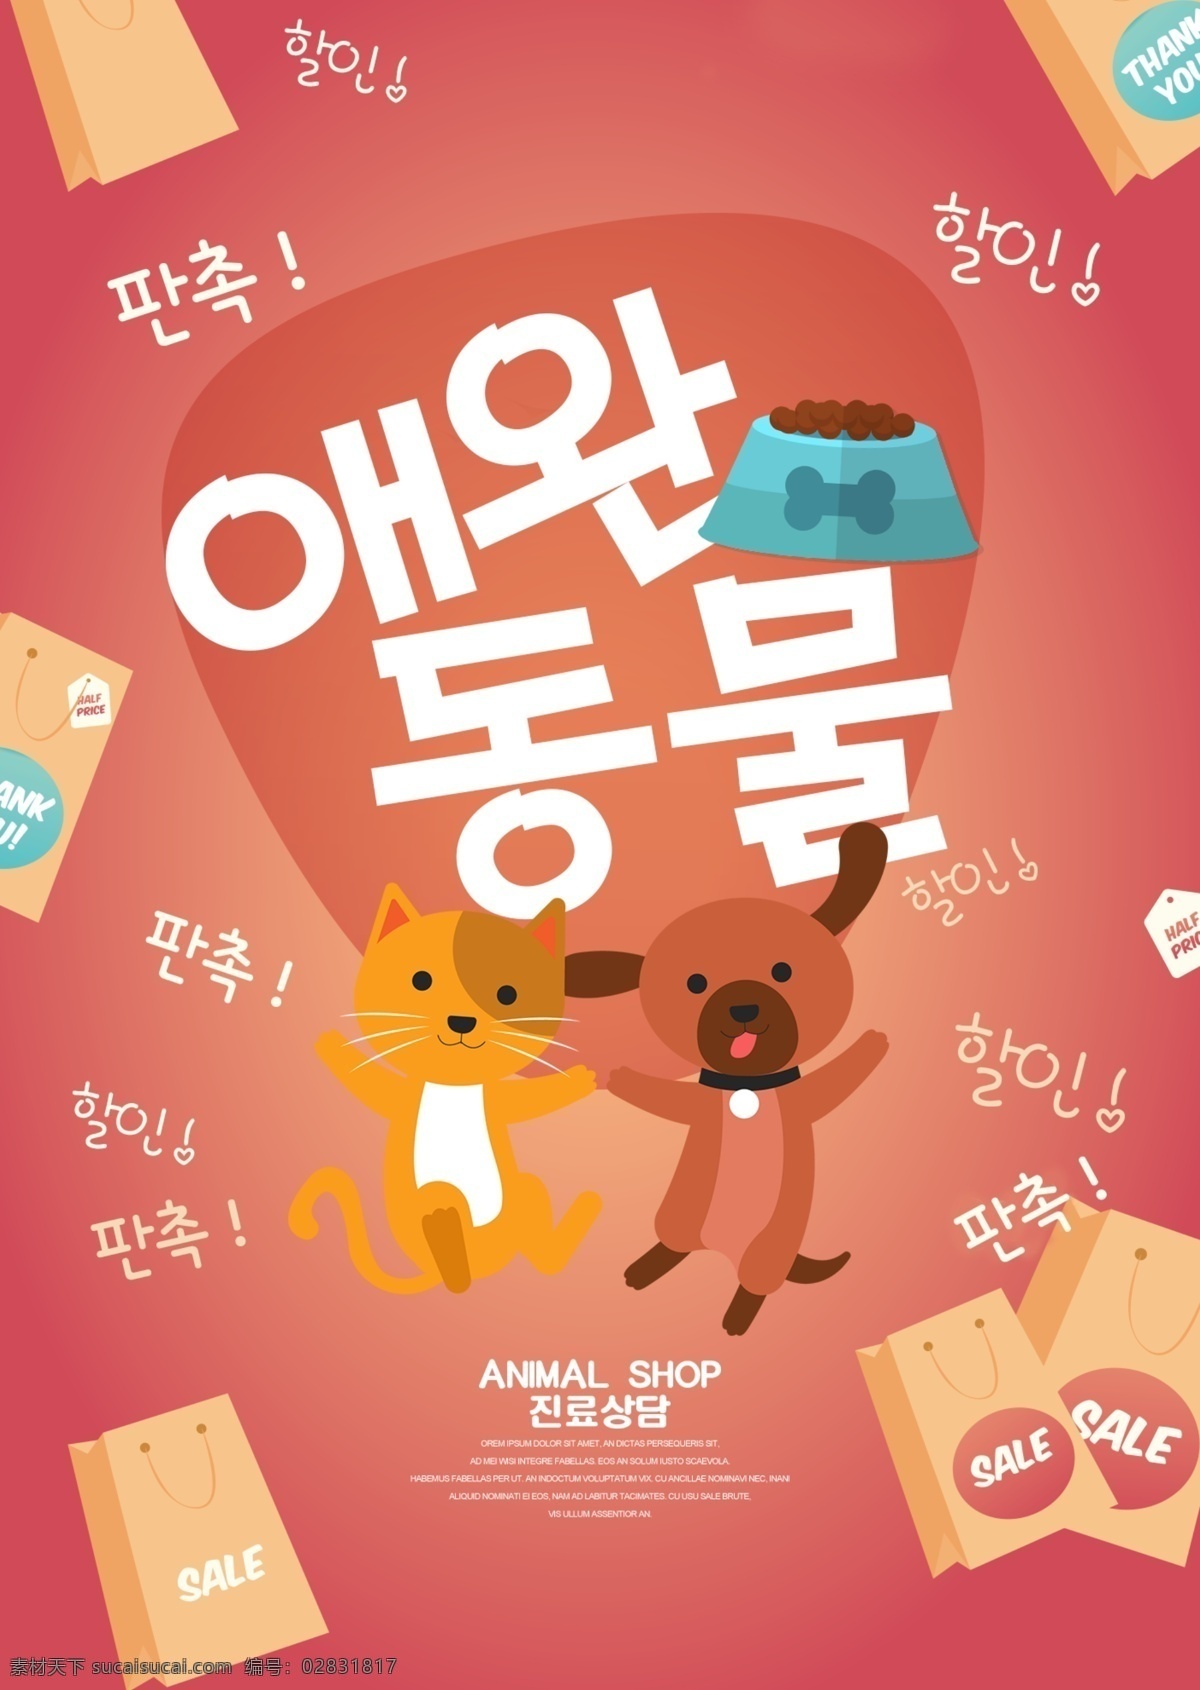 卡通 时尚 韩国 宣传海报 装饰 海报 简单 狗 动物 大韩民国 宠物 可爱 动画片 现代